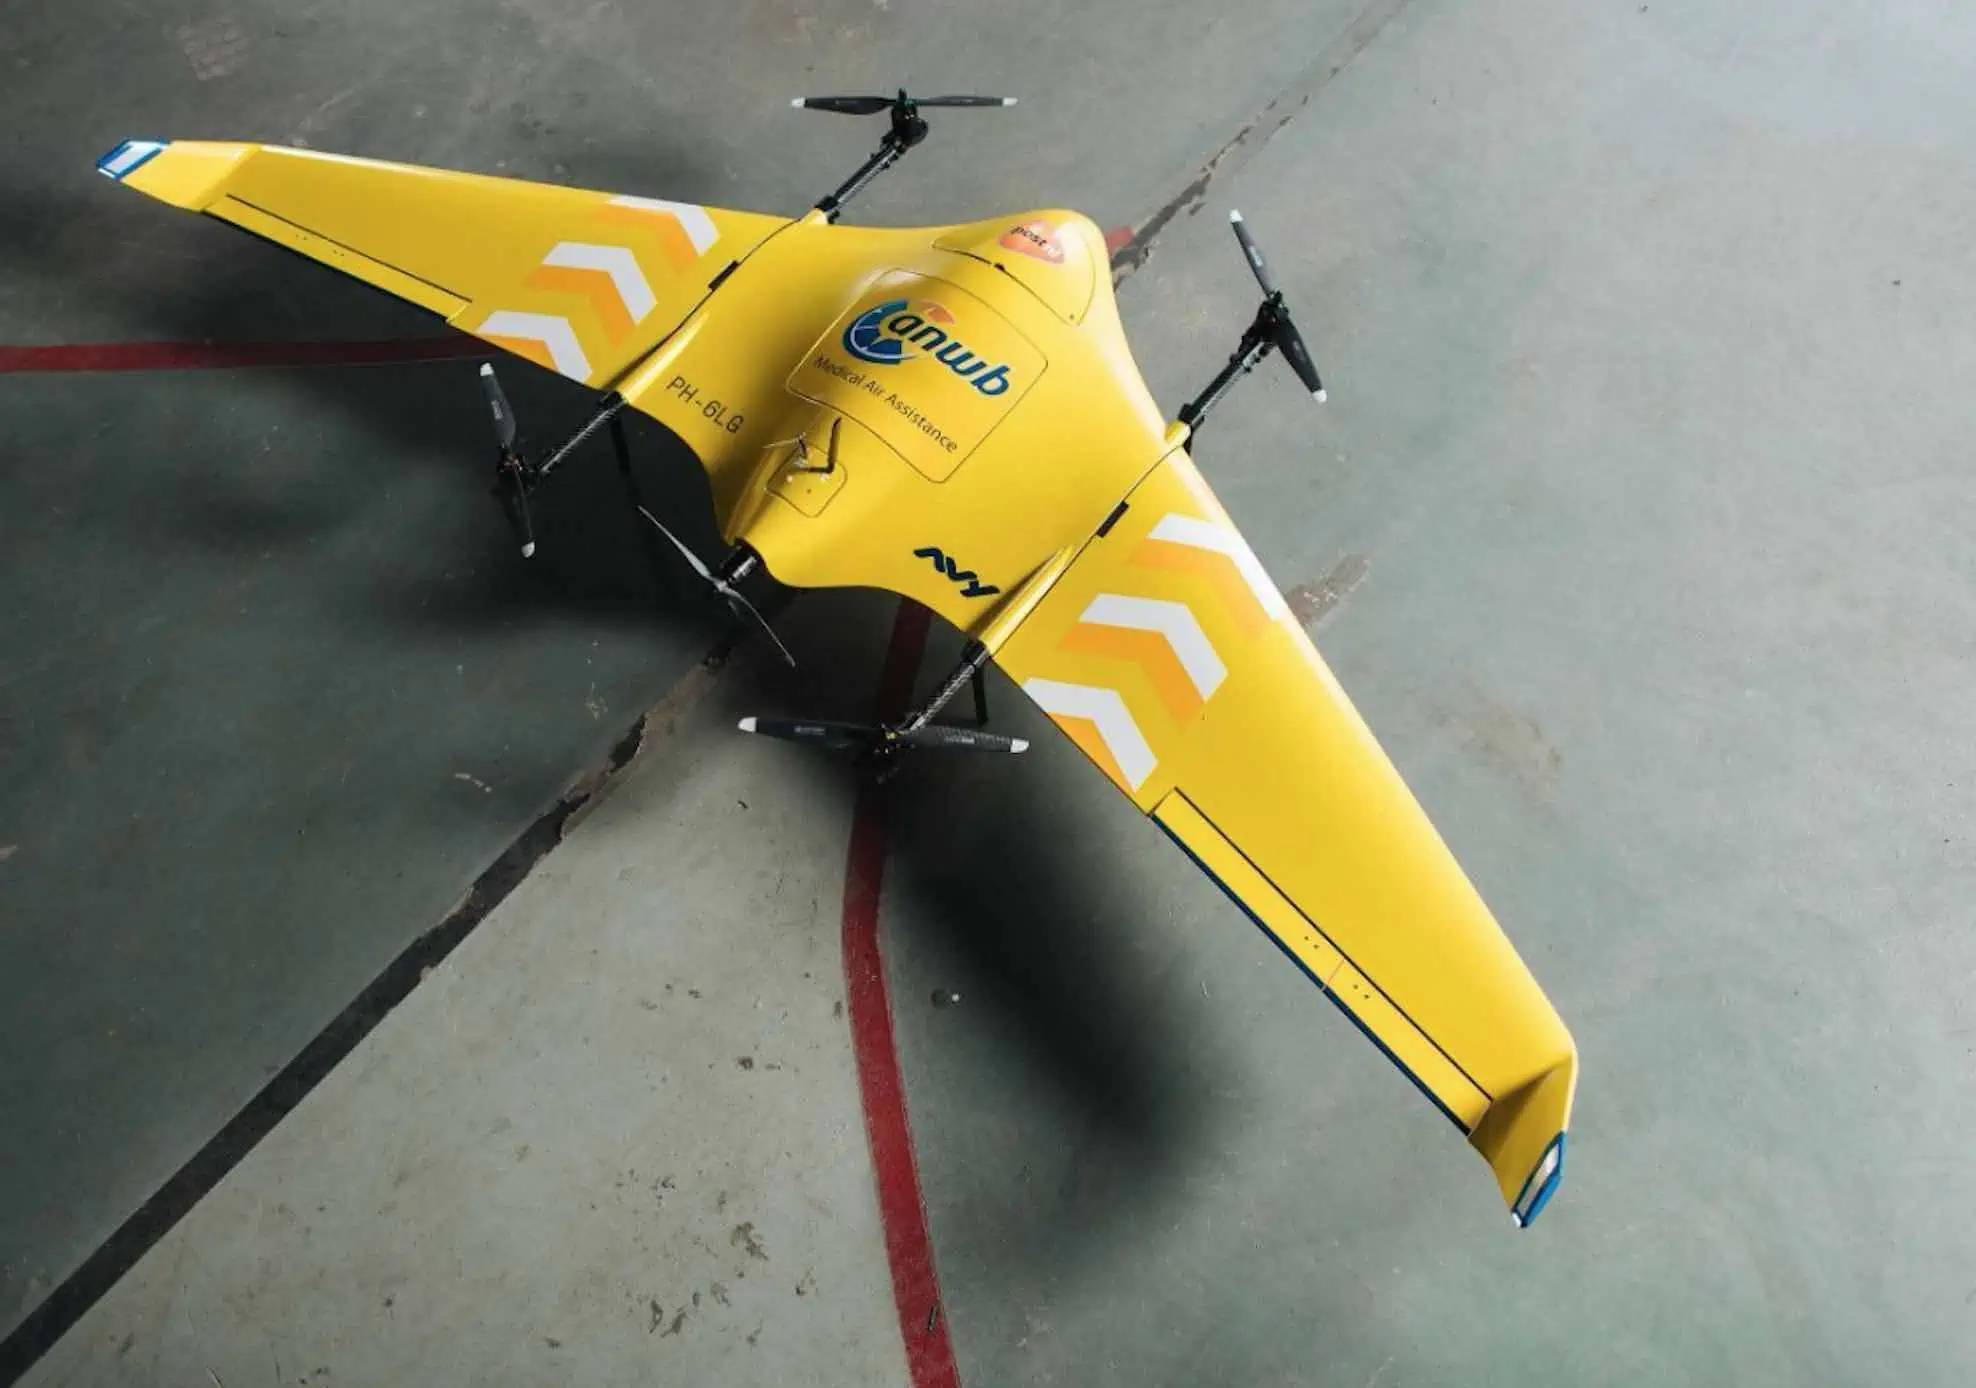 Consegne mediche urgenti: in arrivo un nuovo drone